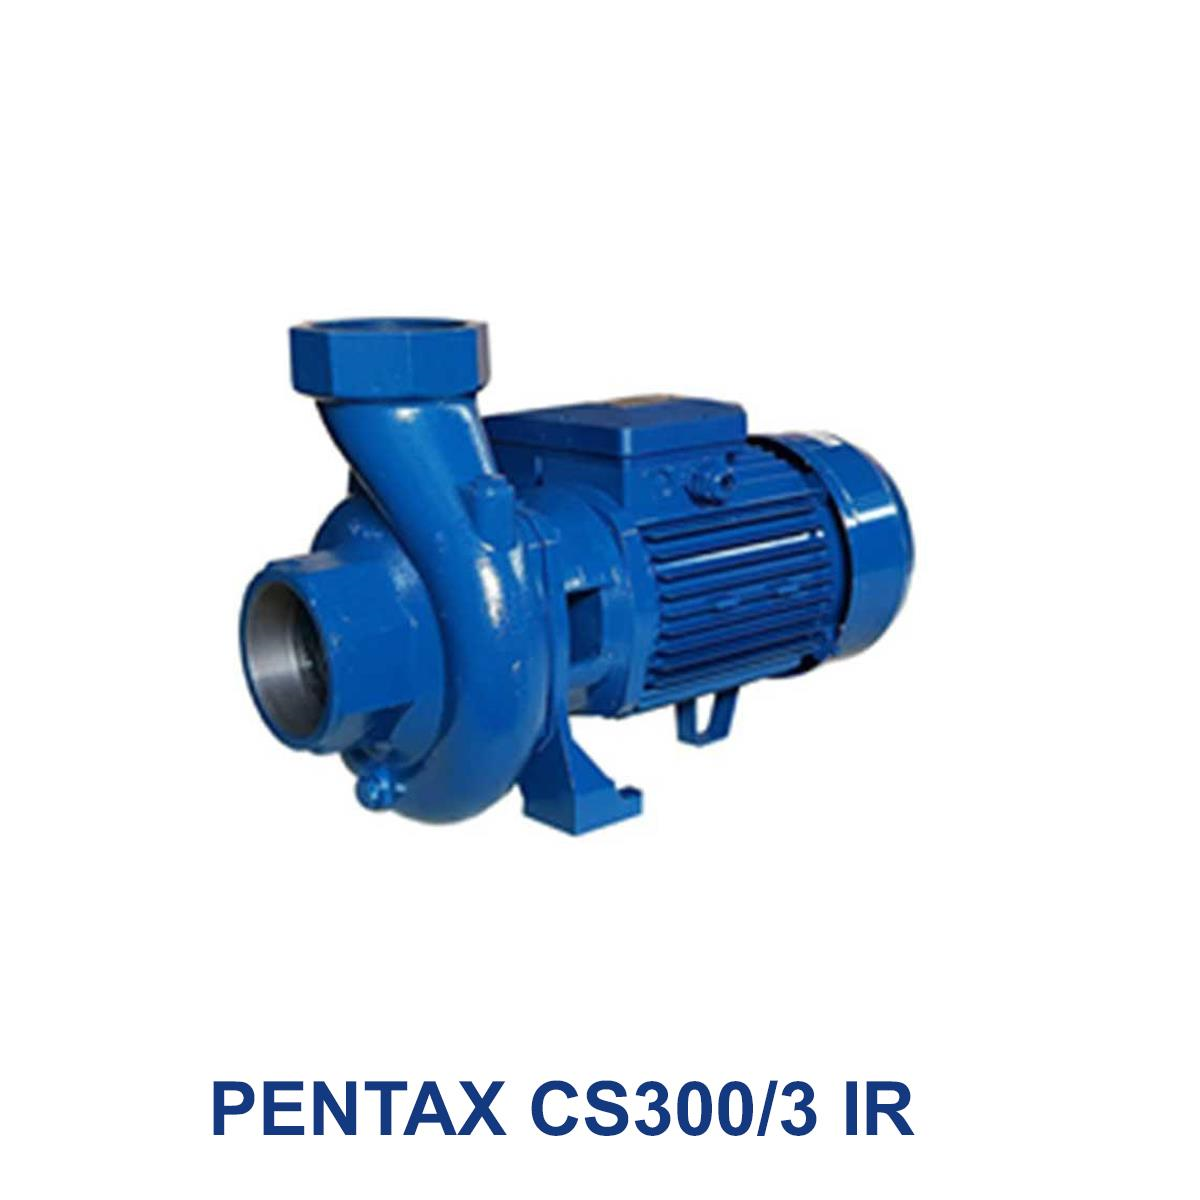 PENTAX-CS300-3-IR